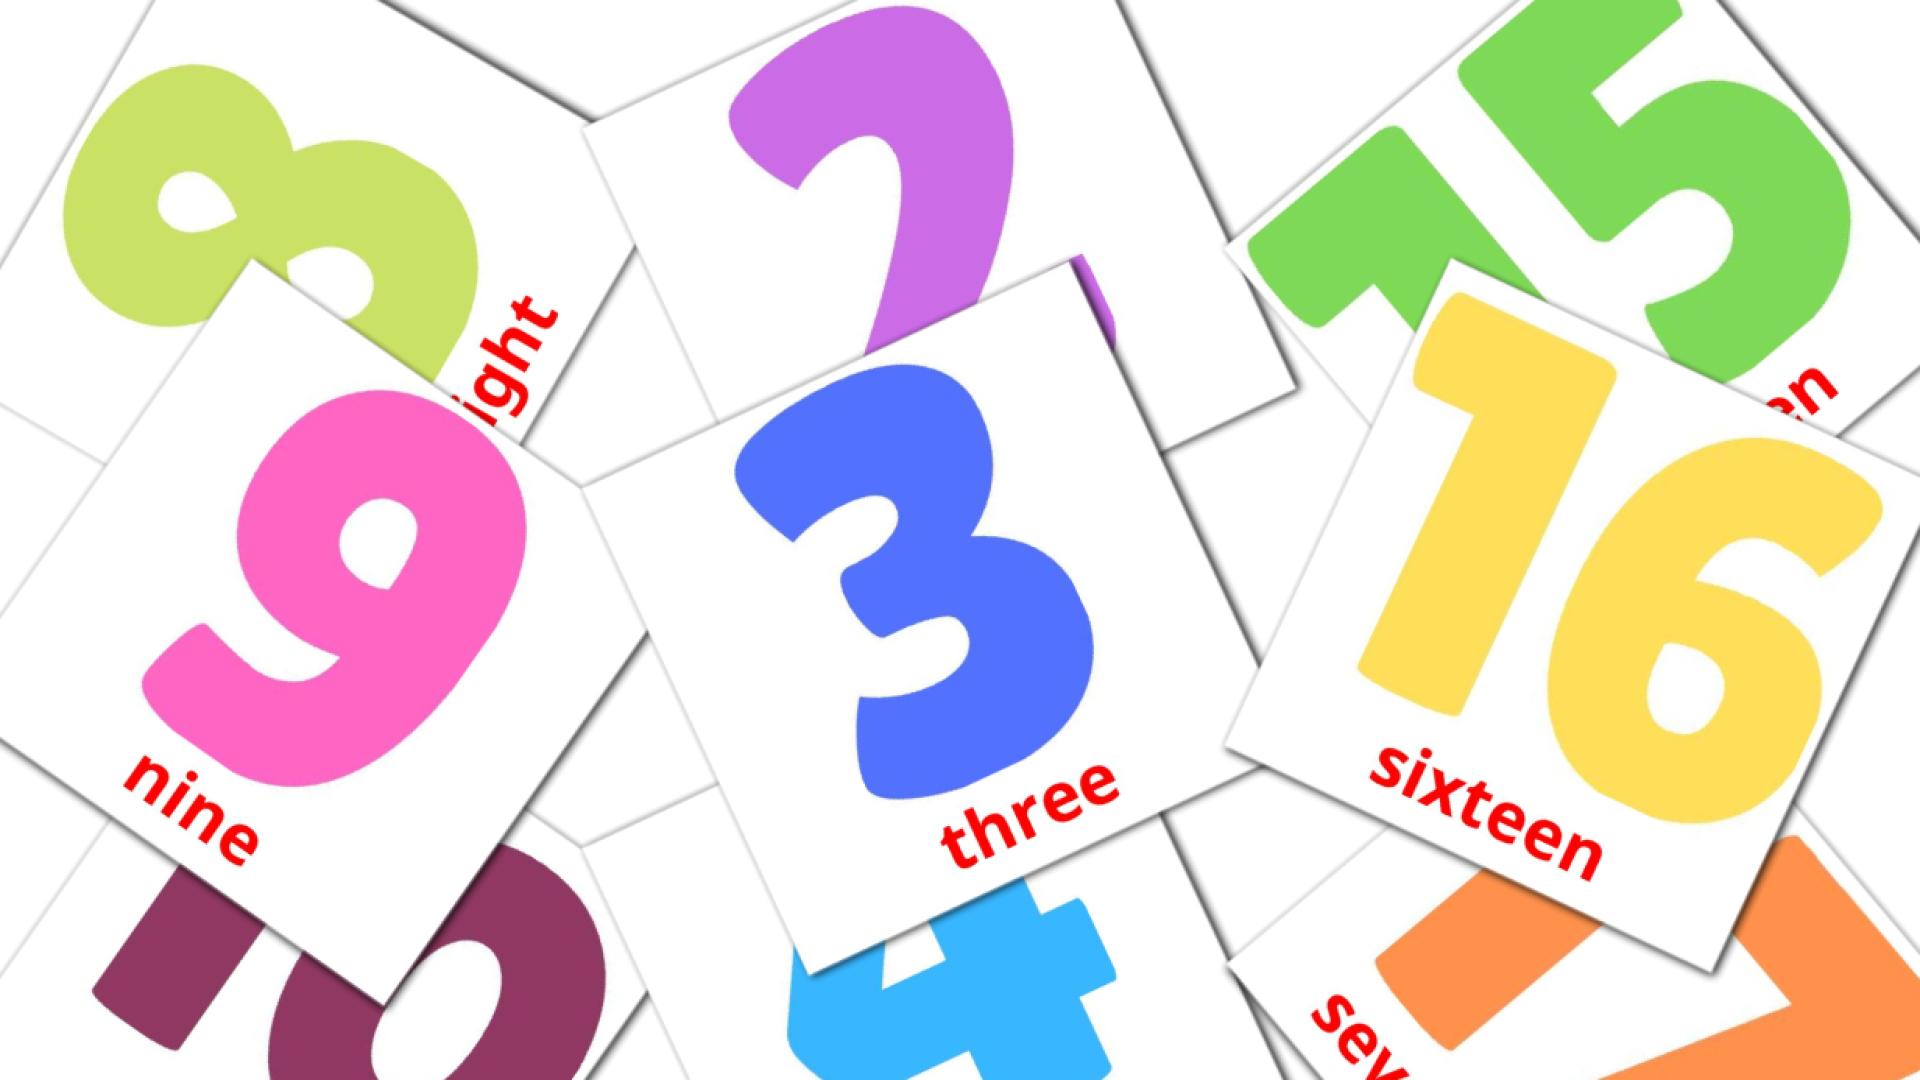 20 tarjetas didacticas de Numbers (1-20)